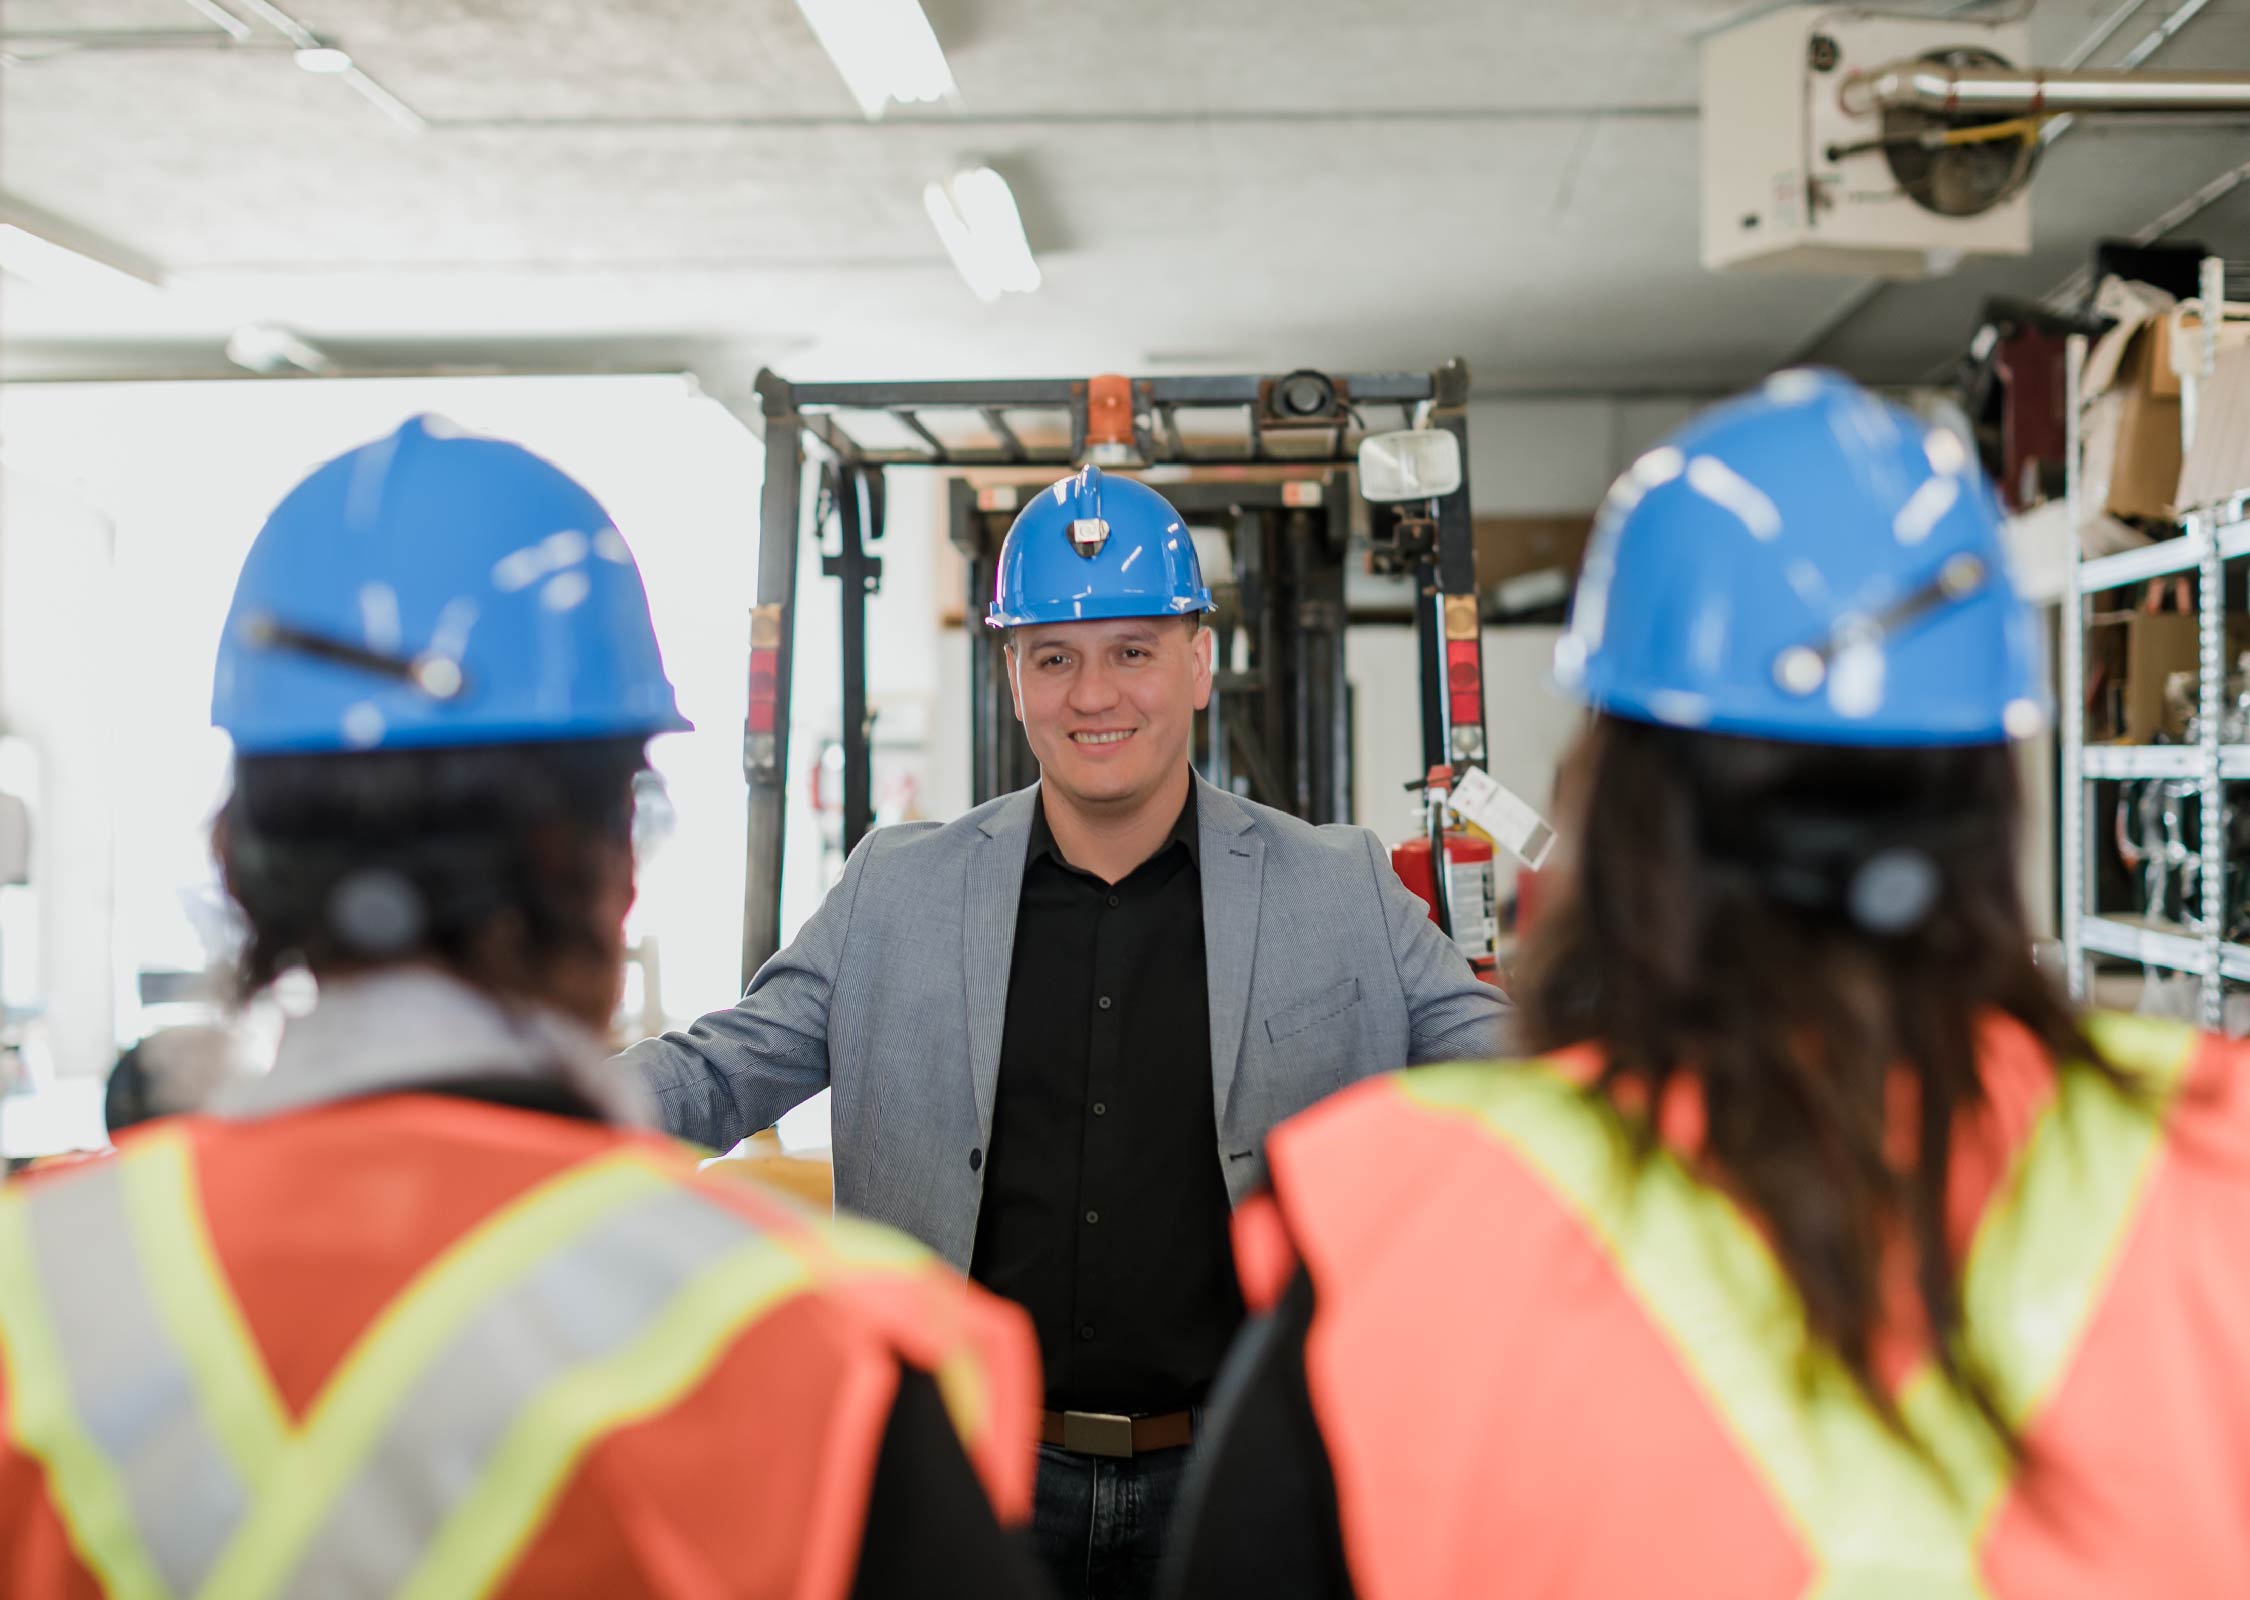 Un homme portant un casque bleu parle à deux ouvriers dans un entrepôt